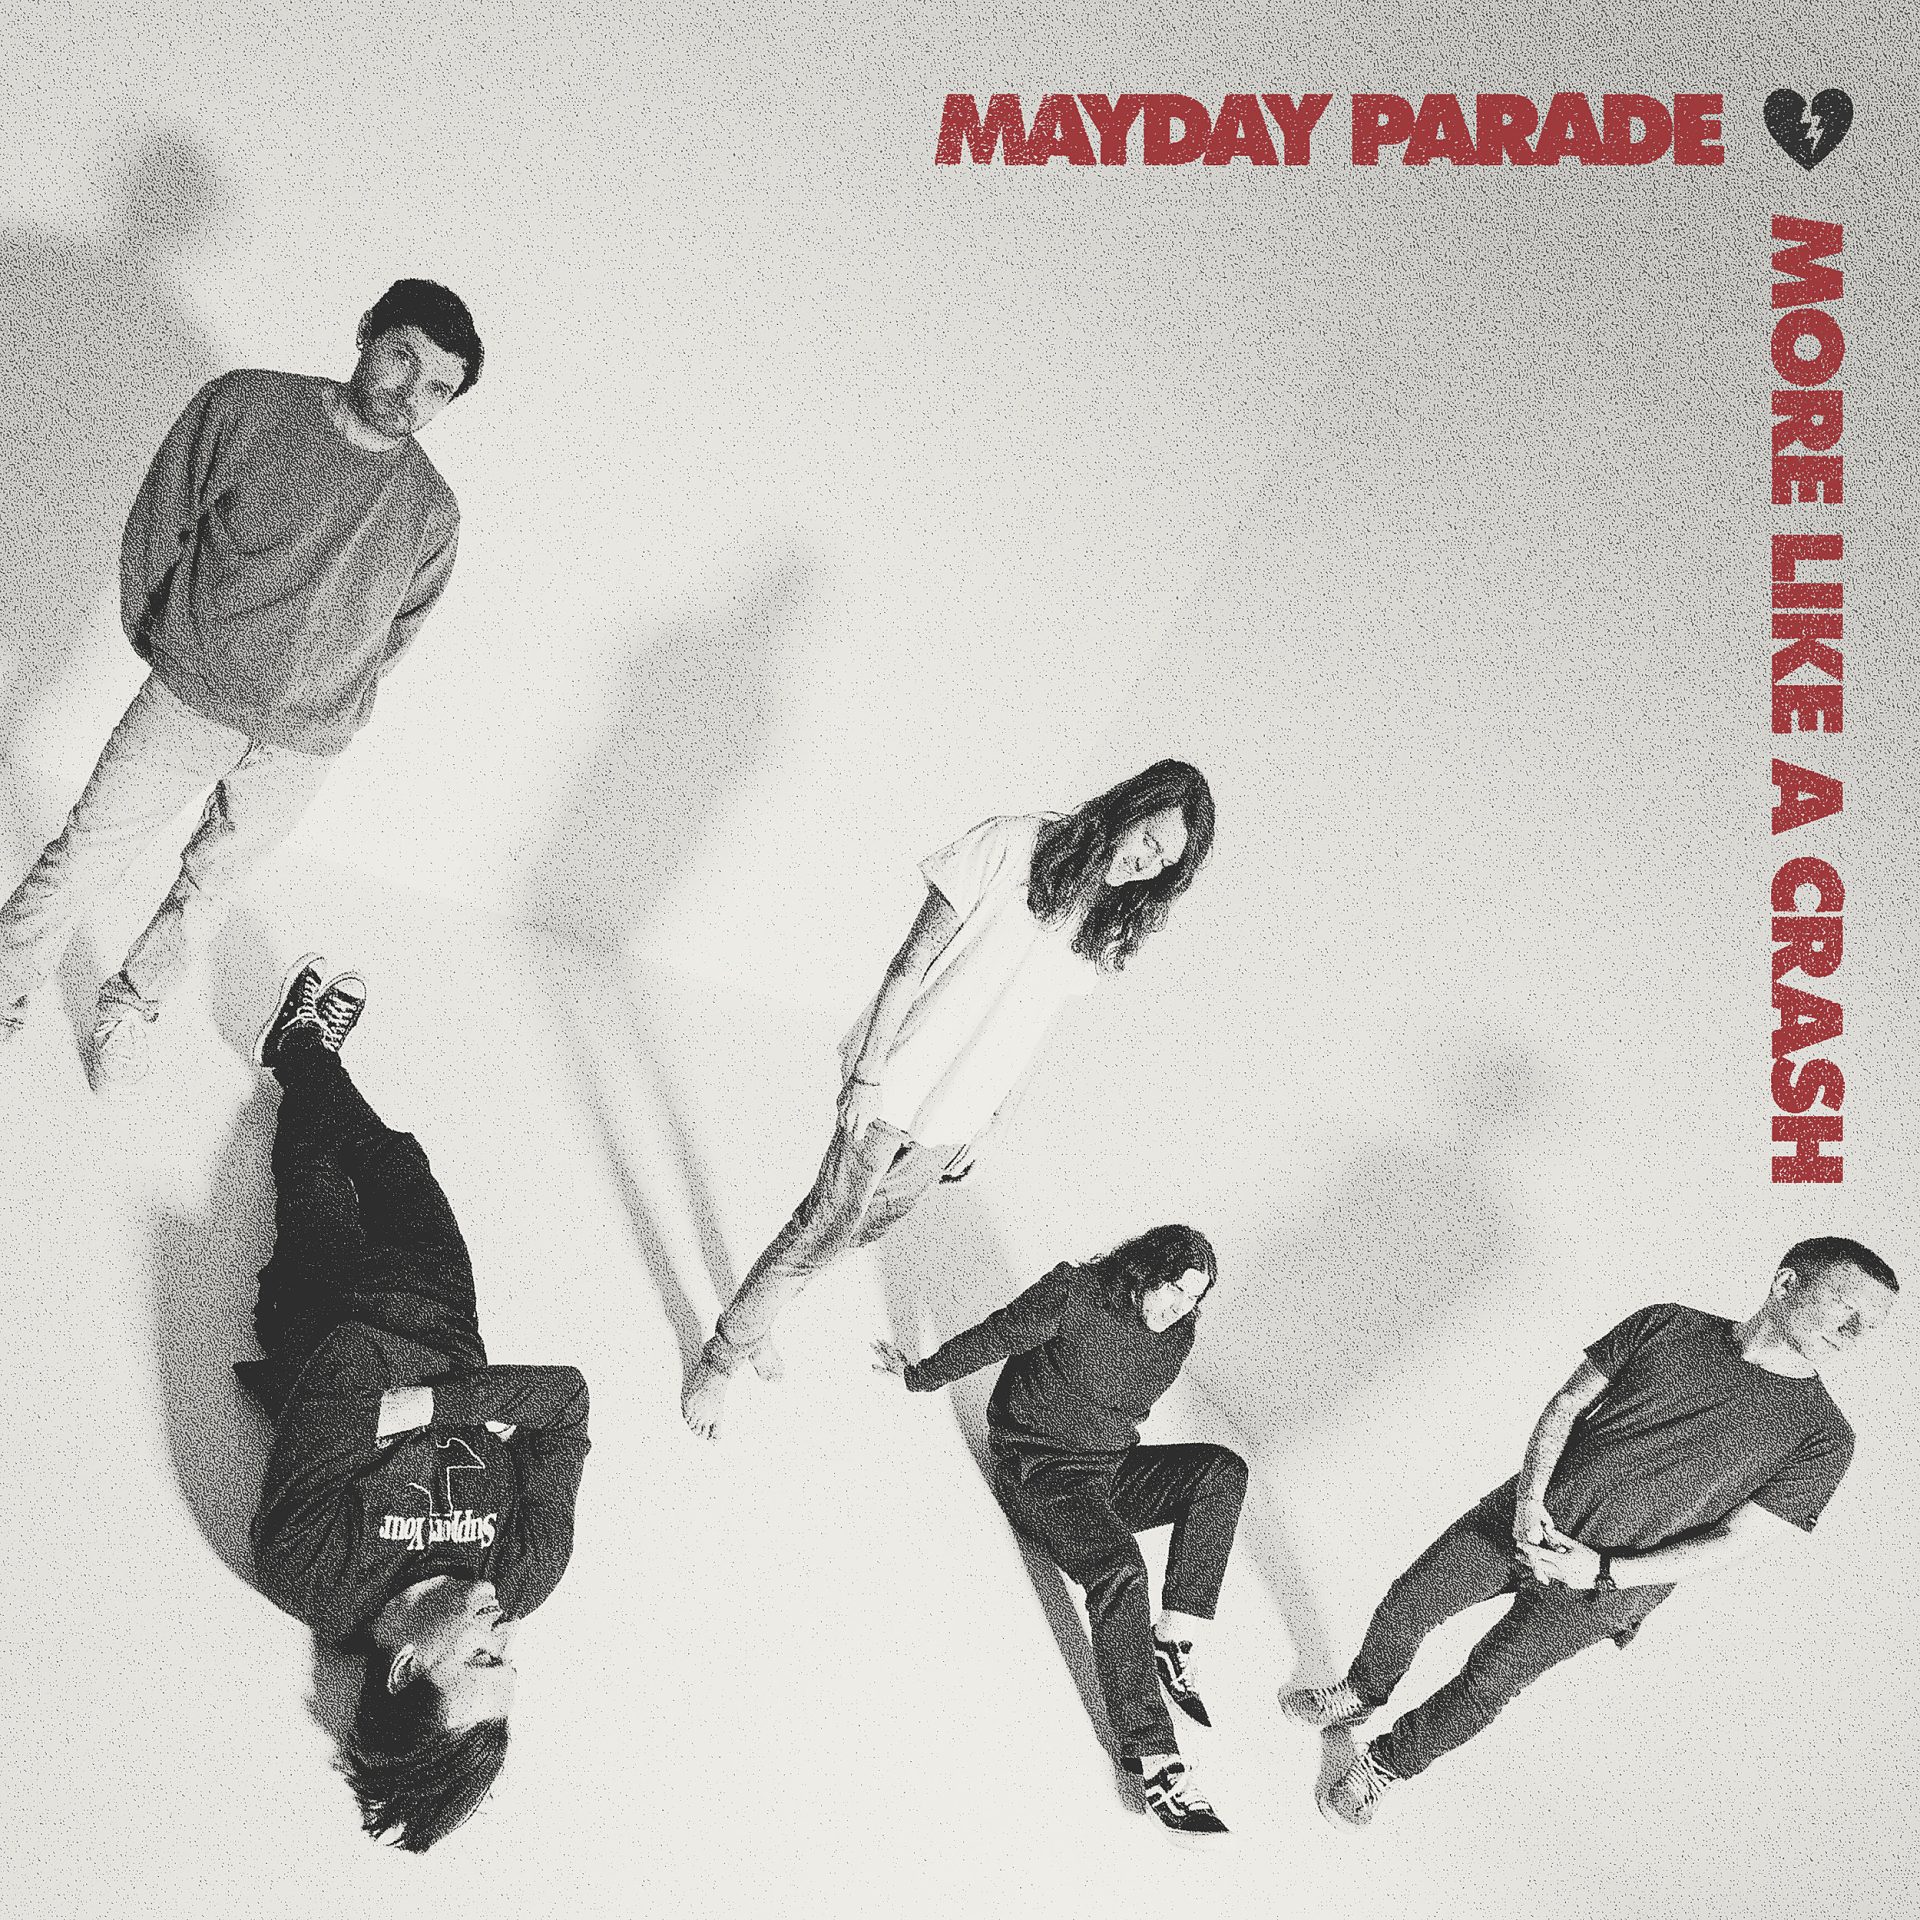 mayday parade "more like a crash" artwork